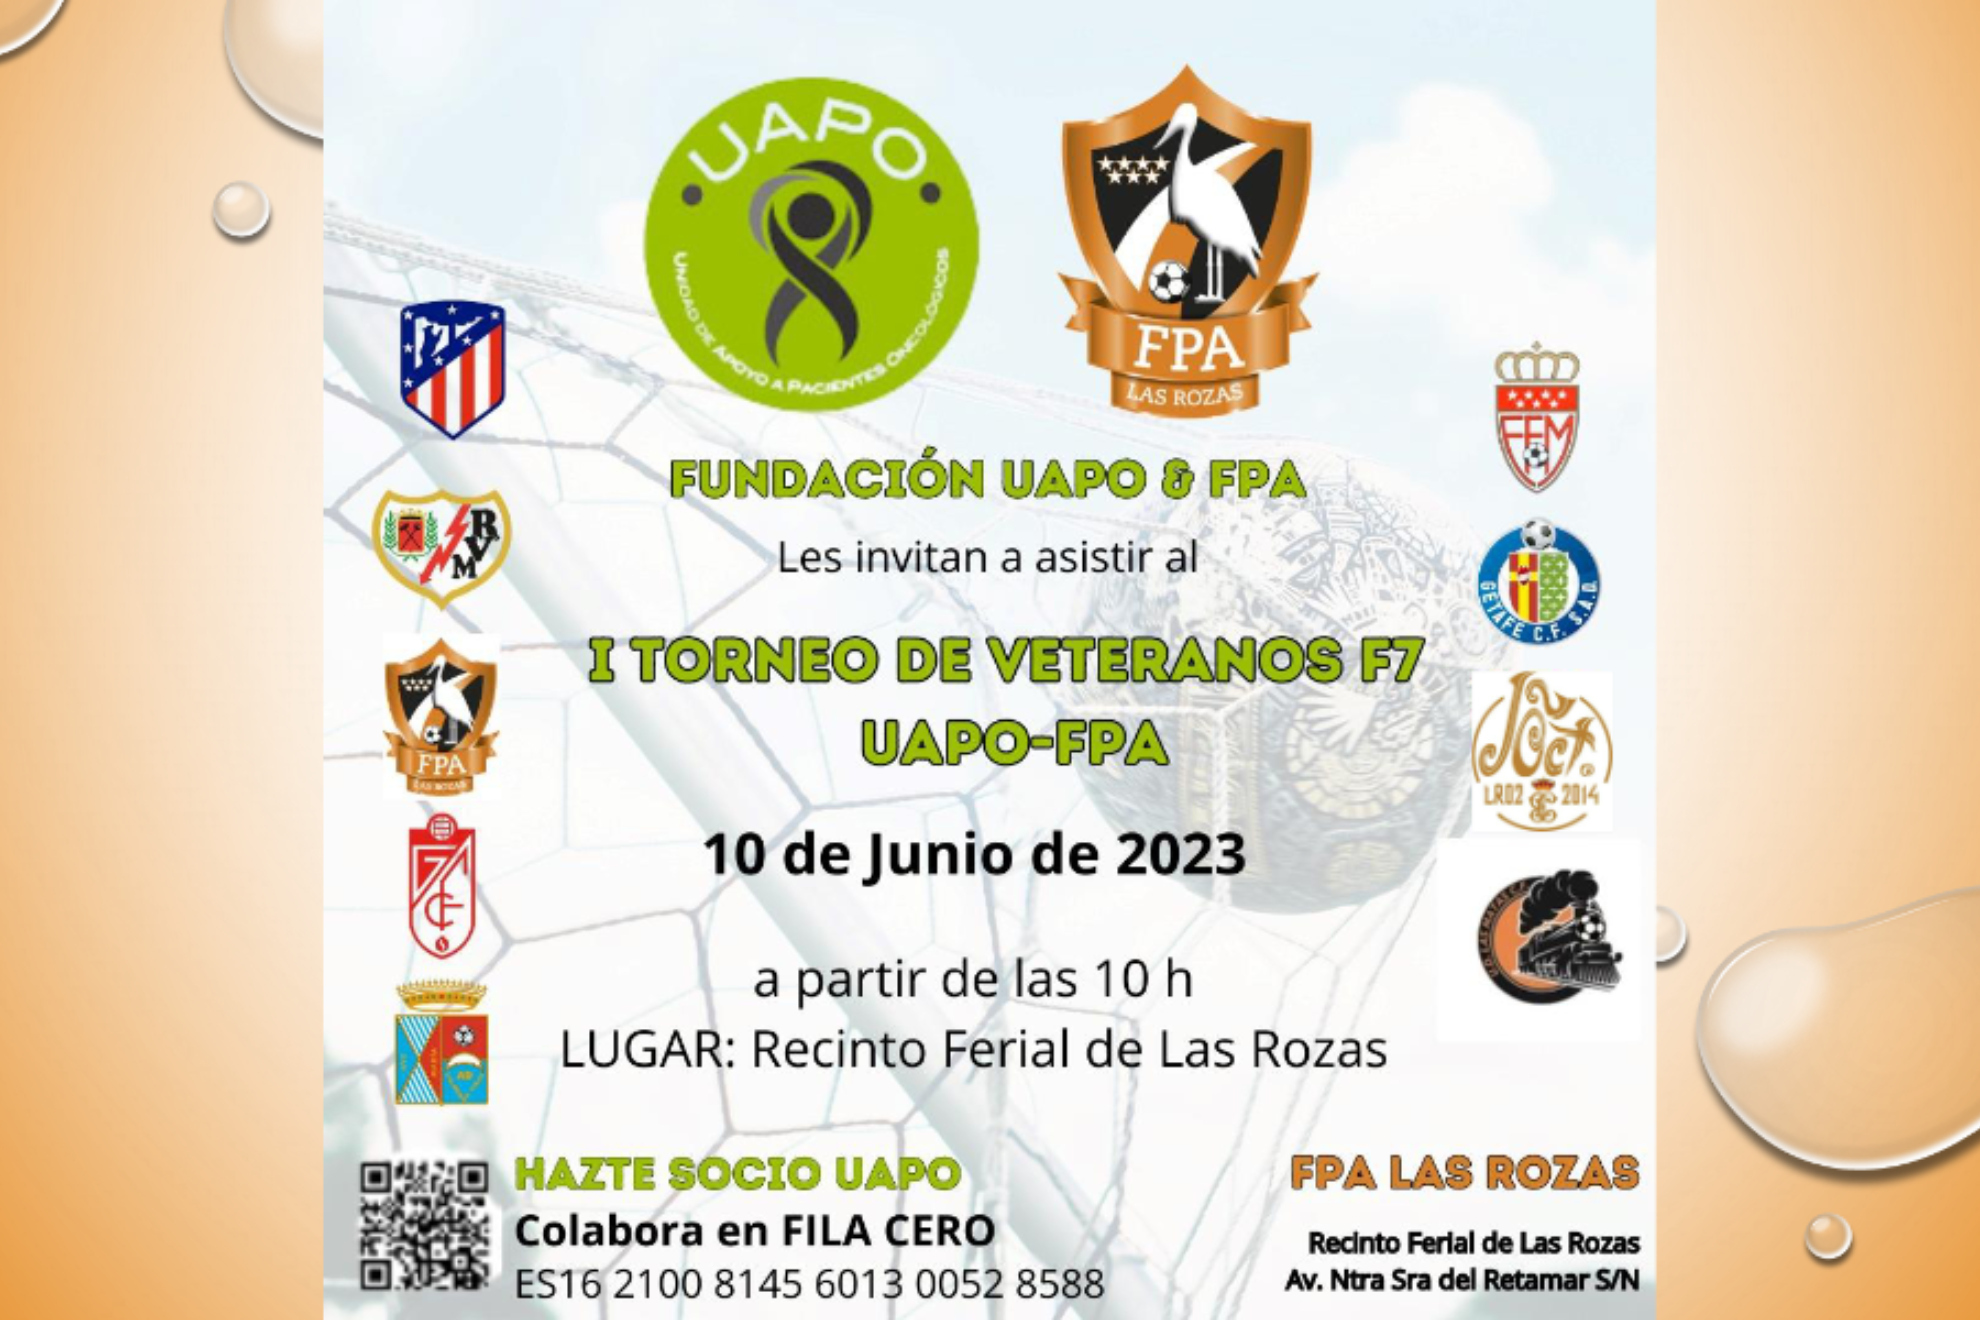 Cartel de presentación del I Torneo de veteranos F7 UAPO-FPA.